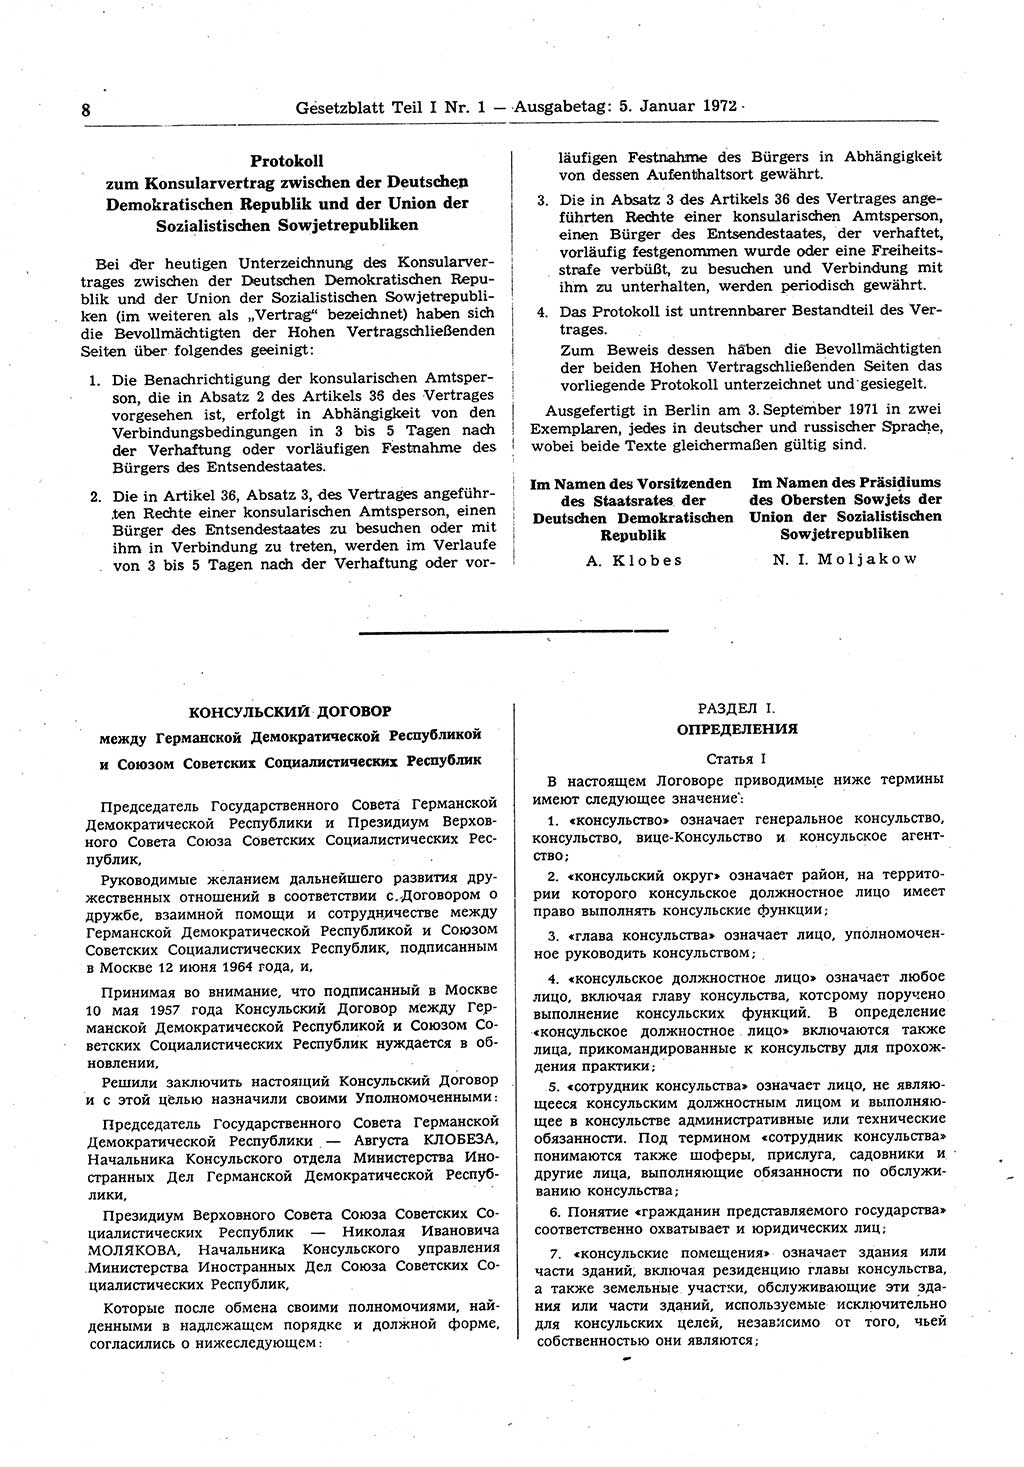 Gesetzblatt (GBl.) der Deutschen Demokratischen Republik (DDR) Teil Ⅰ 1972, Seite 8 (GBl. DDR Ⅰ 1972, S. 8)